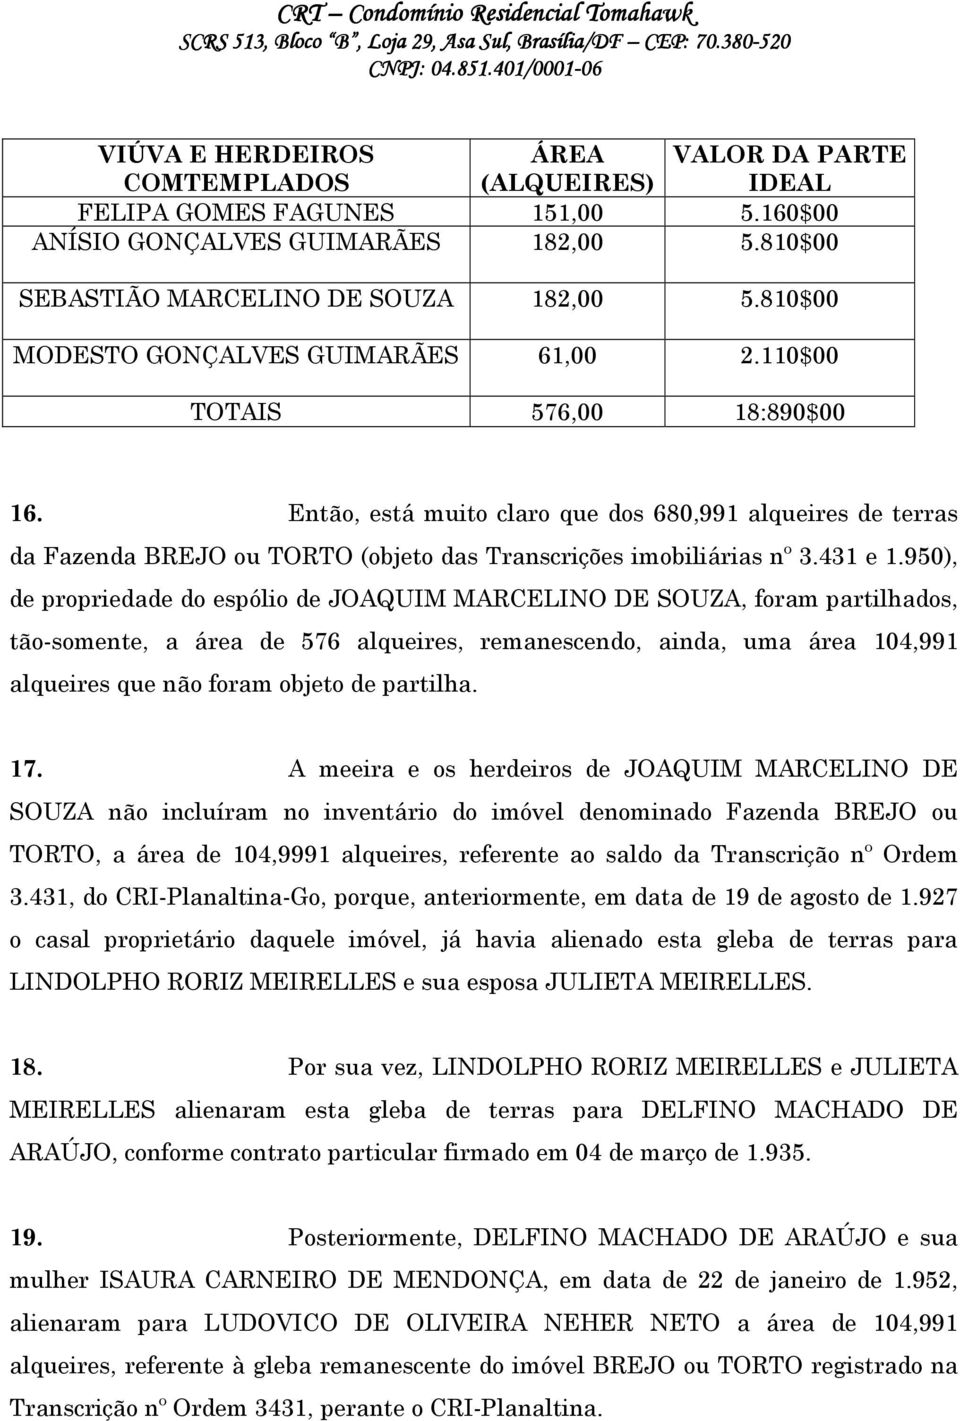 Então, está muito claro que dos 680,991 alqueires de terras da Fazenda BREJO ou TORTO (objeto das Transcrições imobiliárias nº 3.431 e 1.